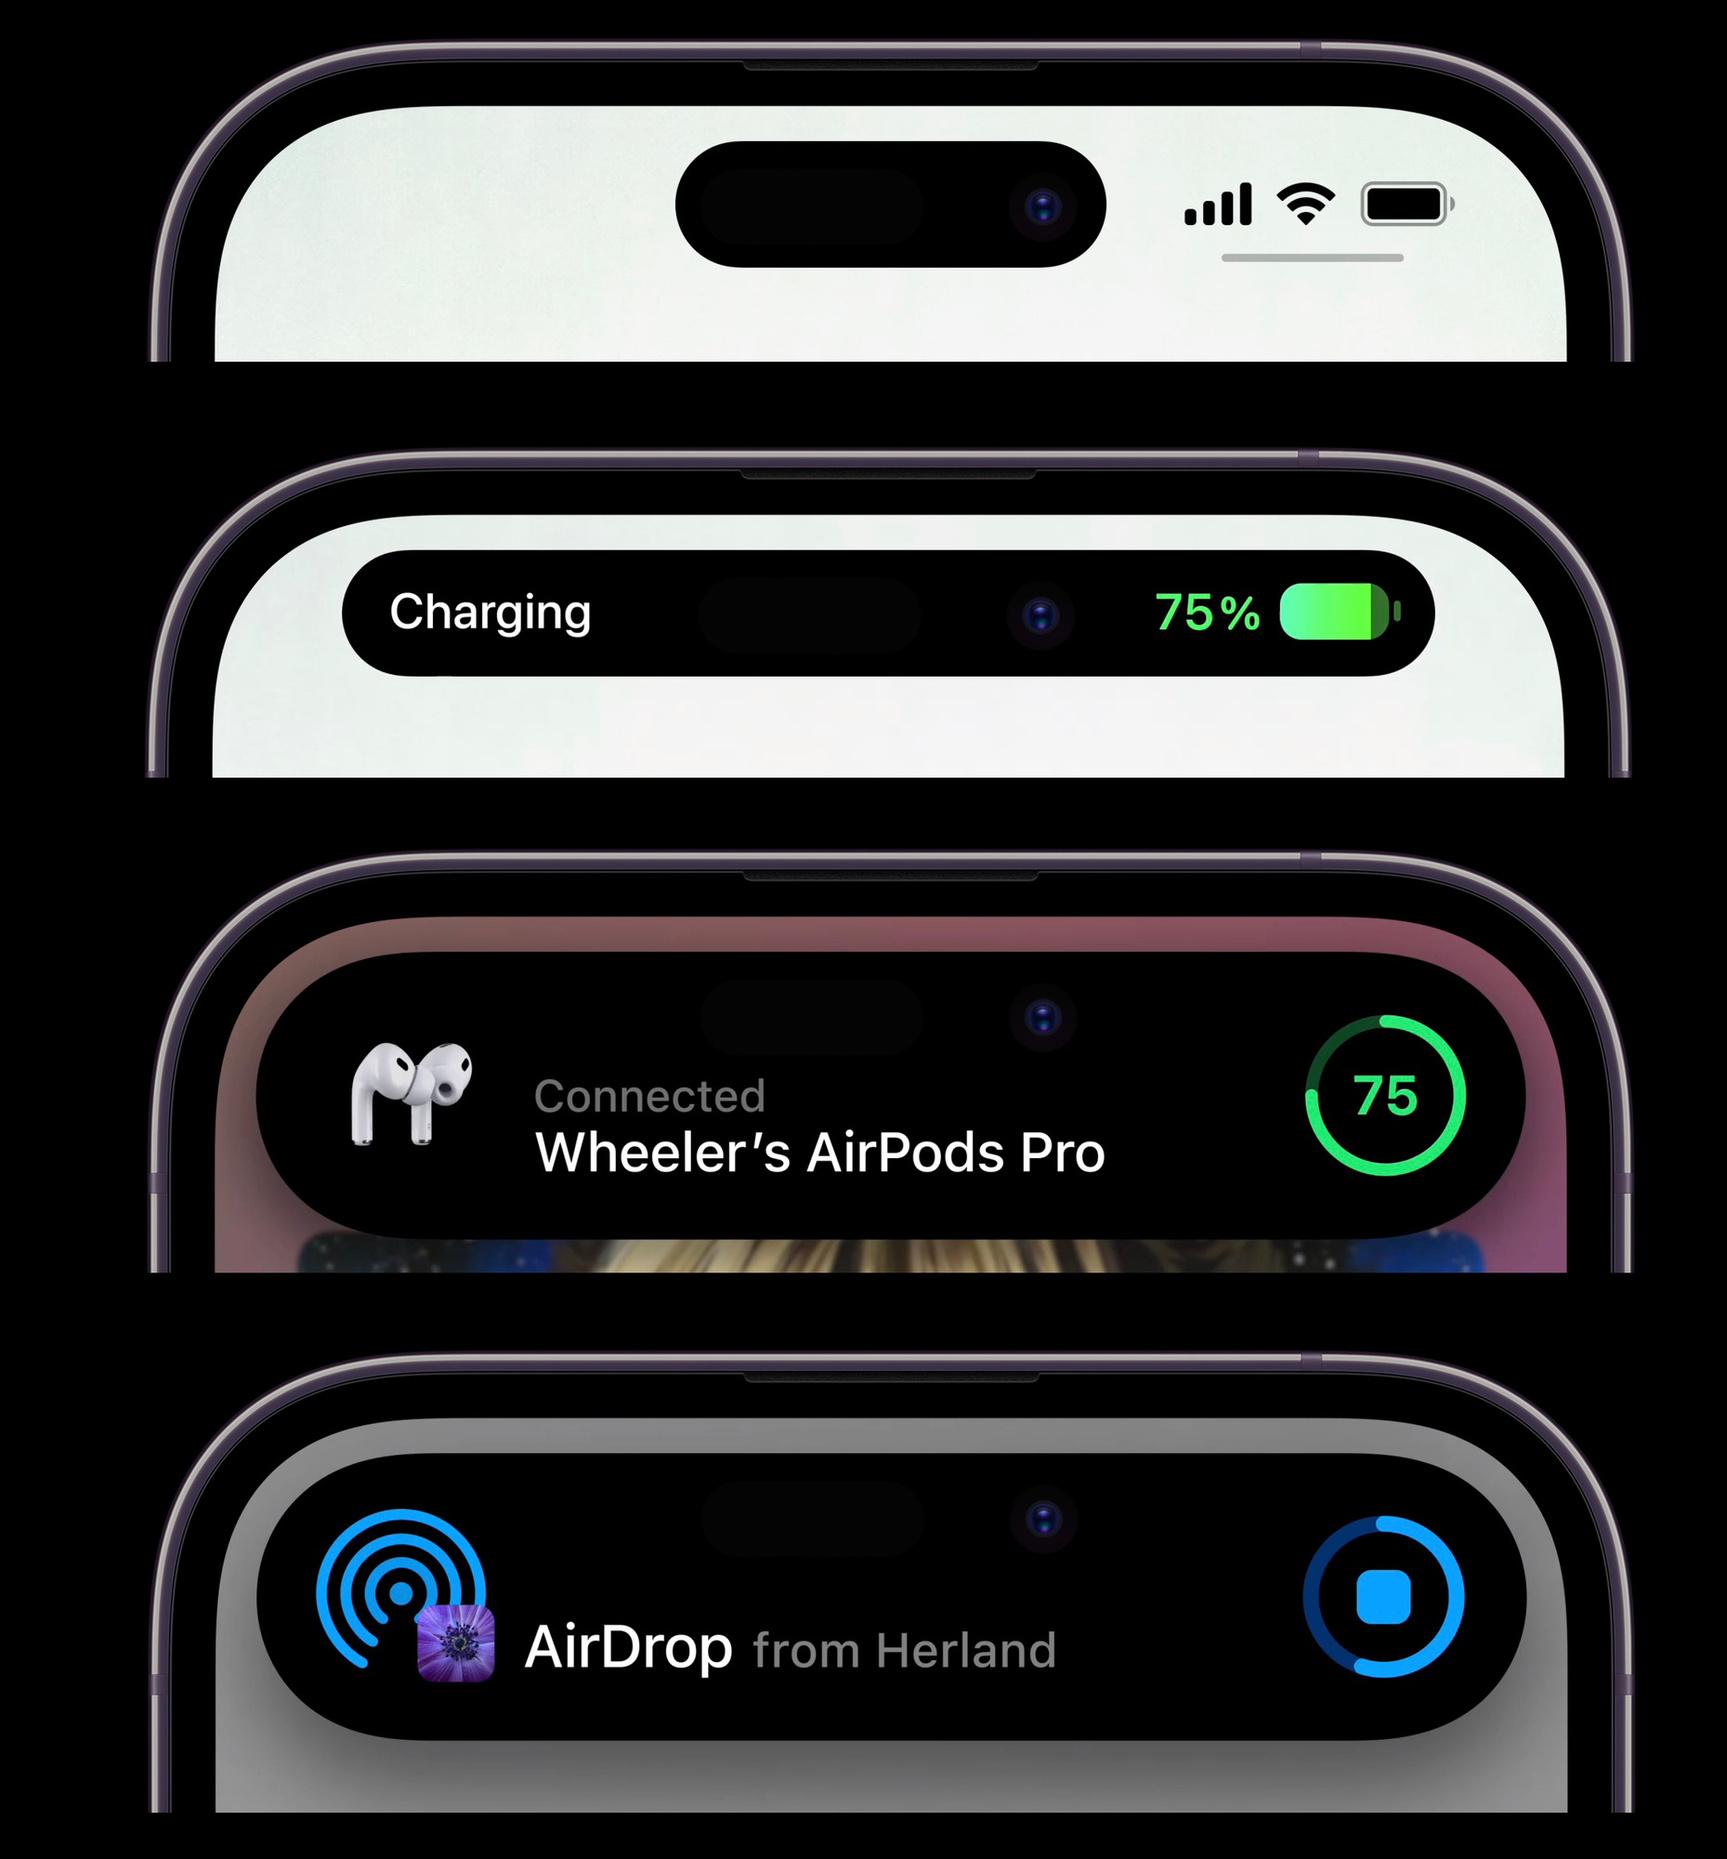 De nieuwe uitsparing van de iPhone 14 Pro en Pro Max (boven), met daaronder enkele voorbeelden van wat Apple het Dynamic Island noemt.